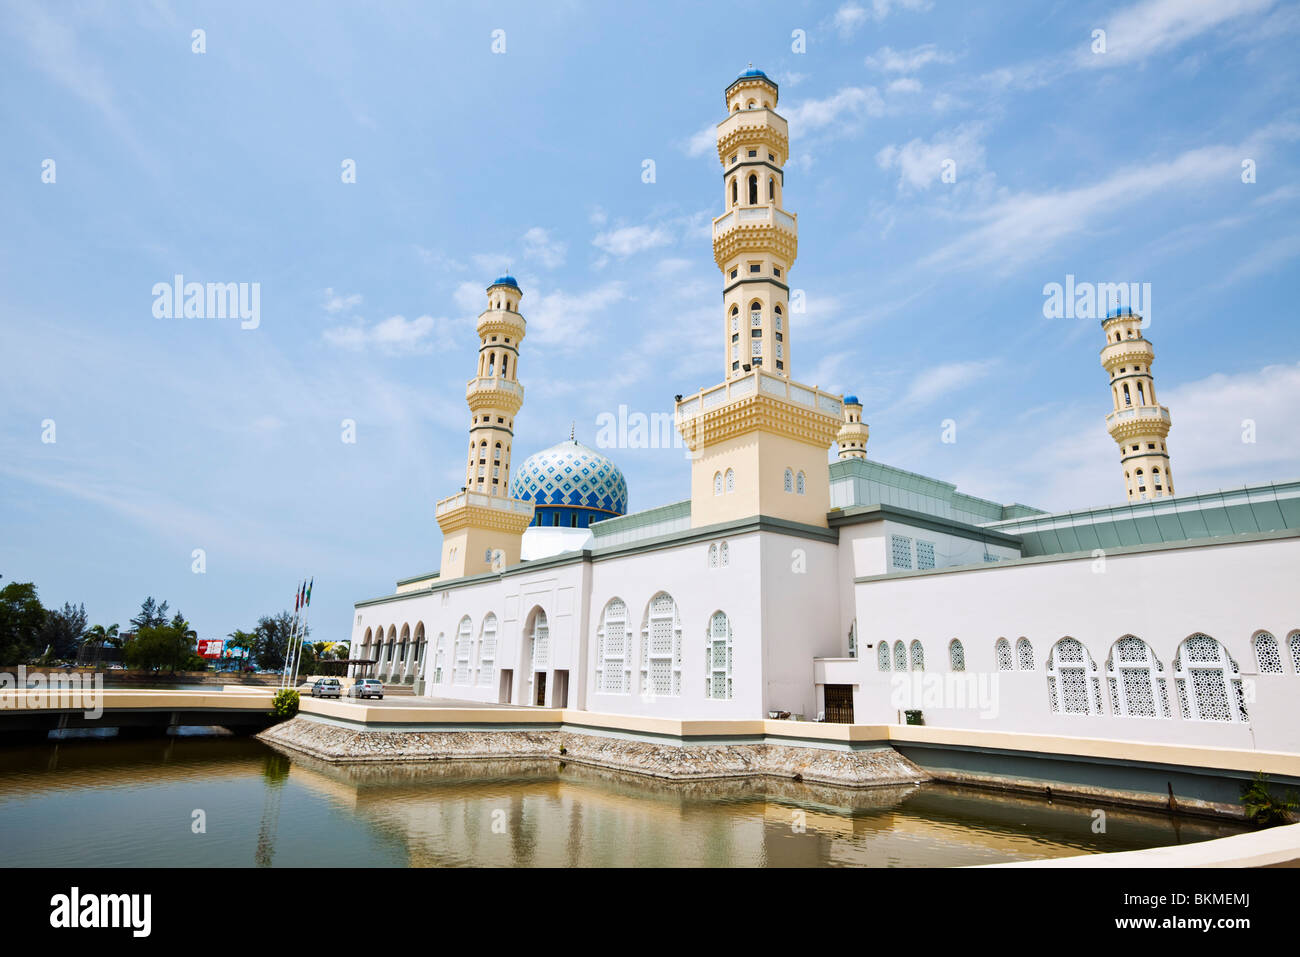 Kota Kinabalu City Mosque at Likas Bay.  Kota Kinabalu, Sabah, Borneo, Malaysia. Stock Photo